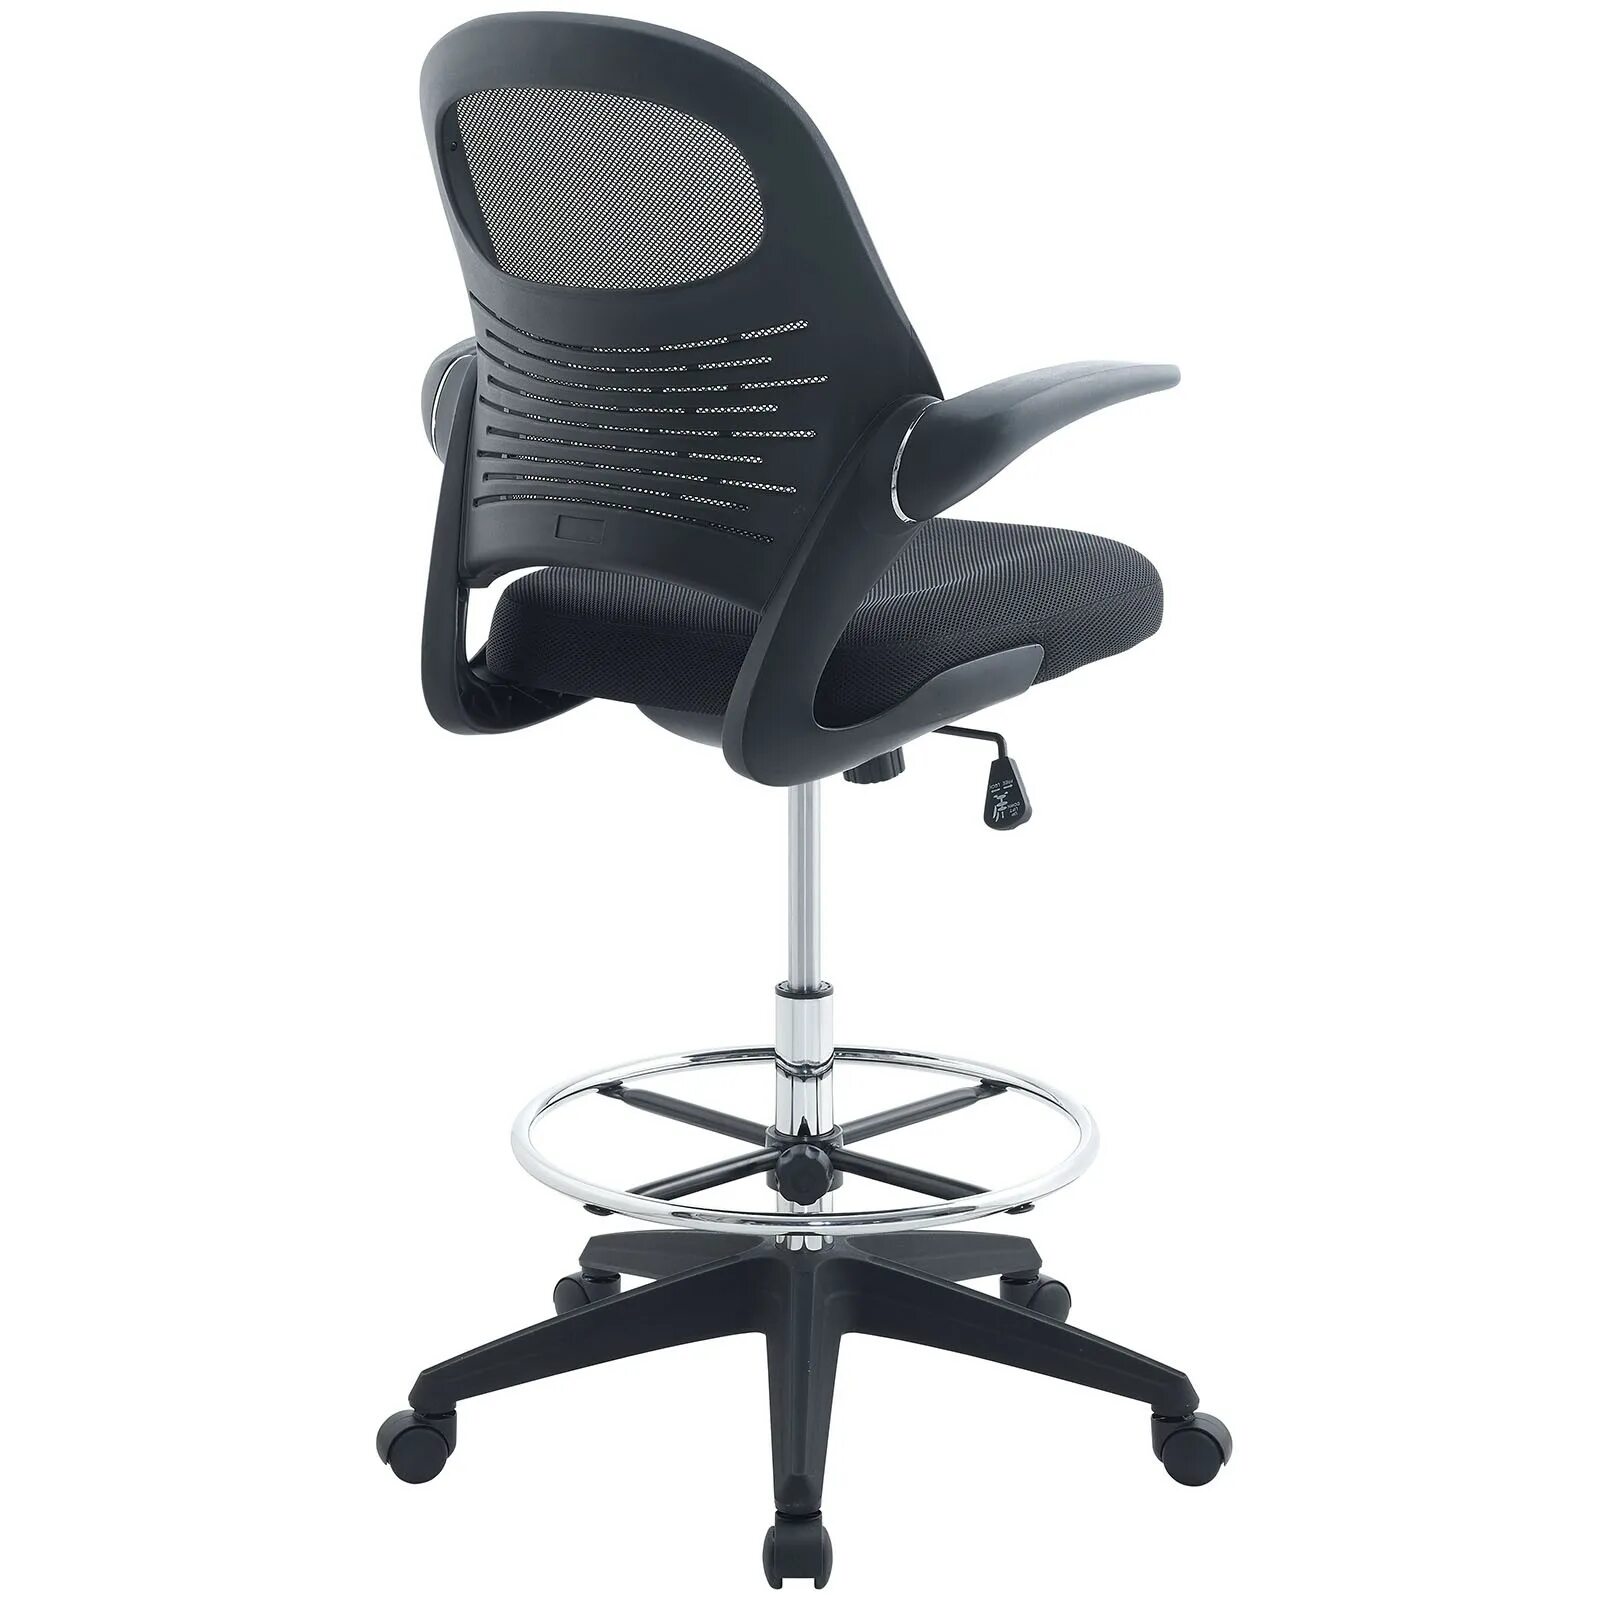 Kreslo Chairman 850. Стоячий офисный стул. Стоячее кресло для офиса. Кресло офисное 150 кг.